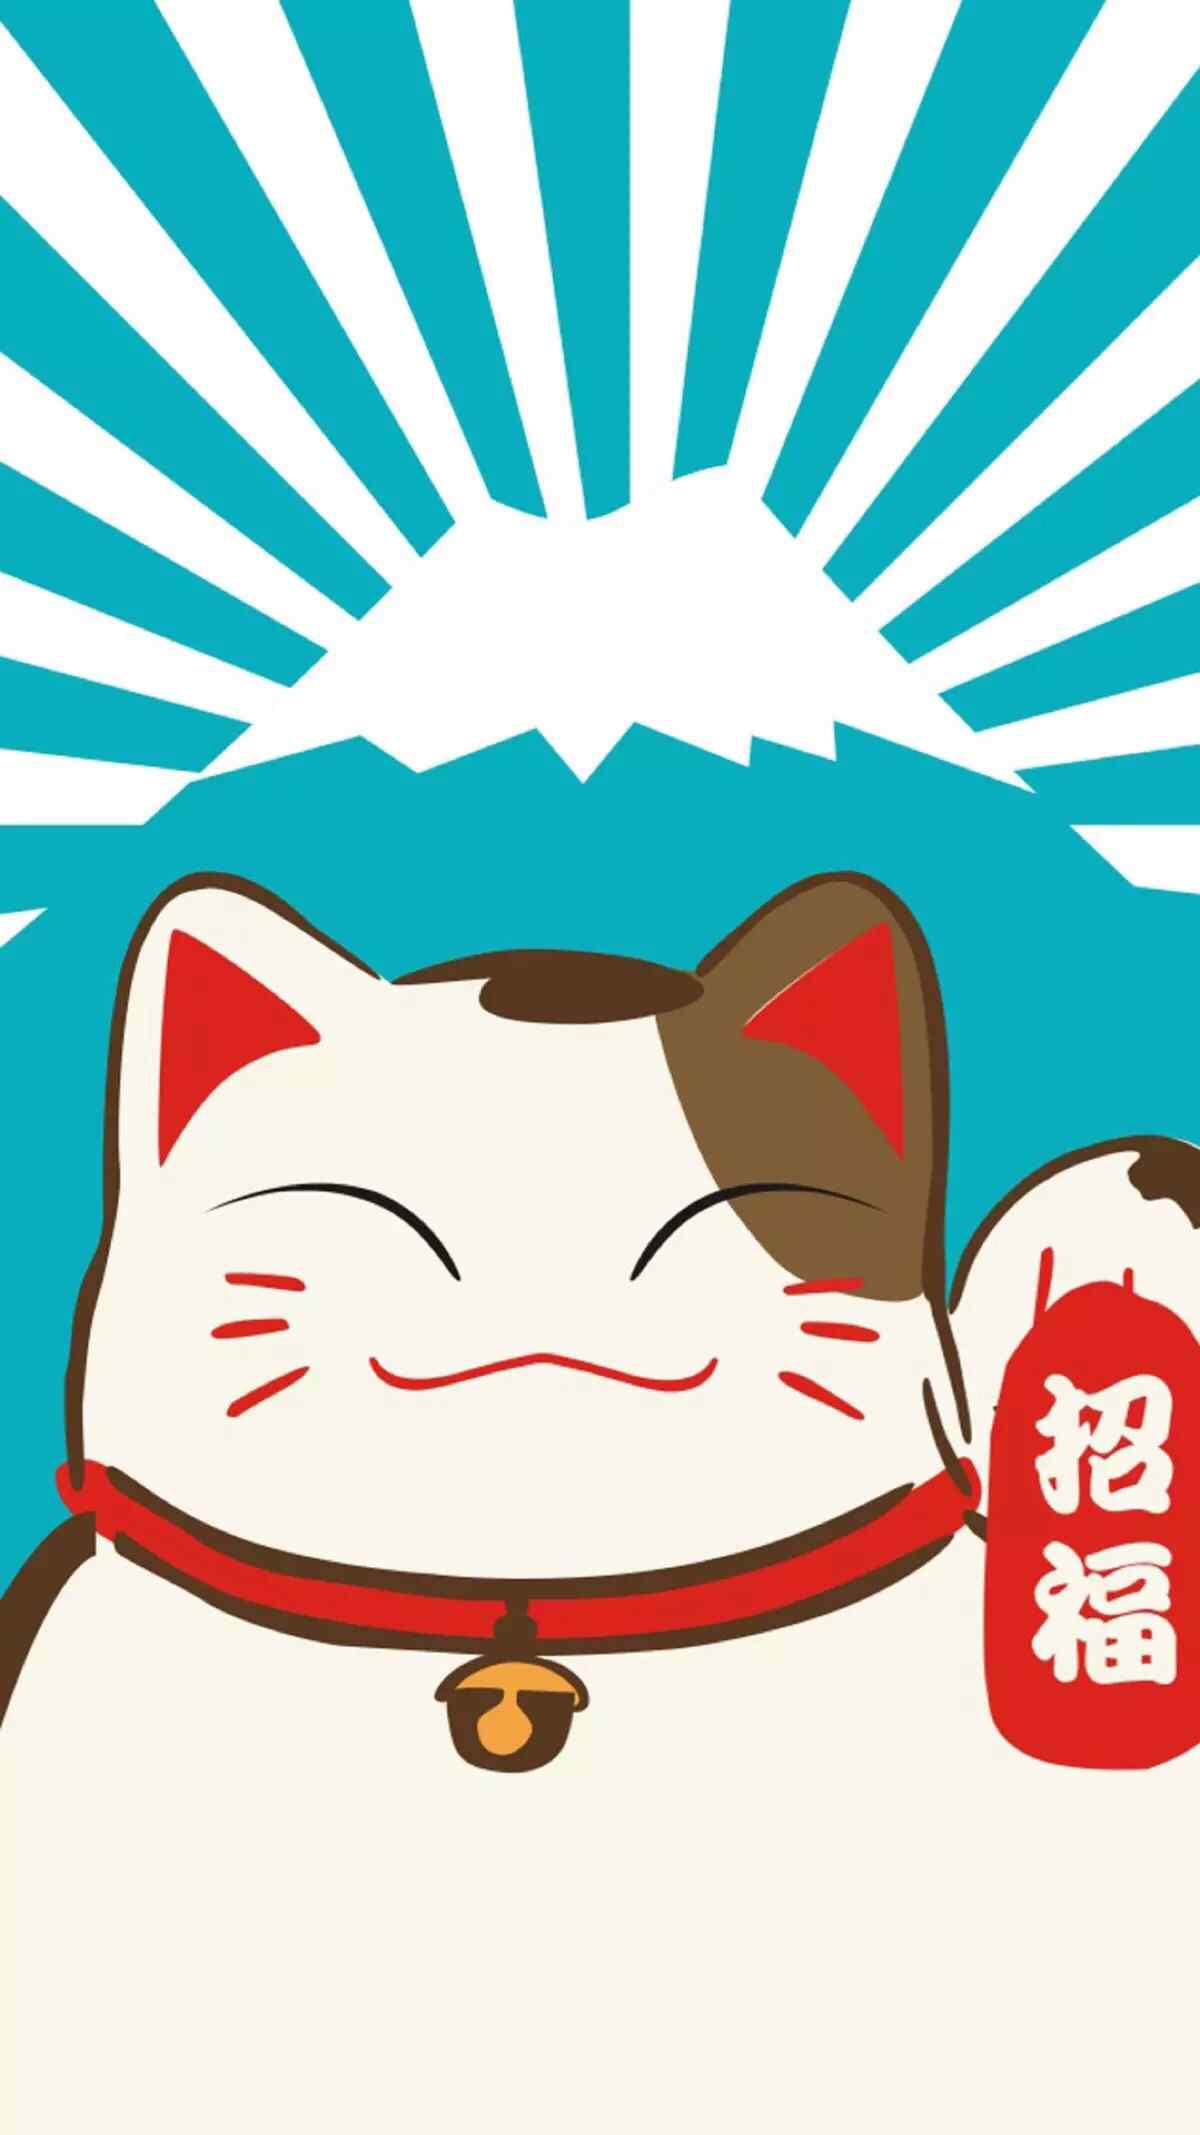 可爱卡通招财猫赵旉图片手机壁纸